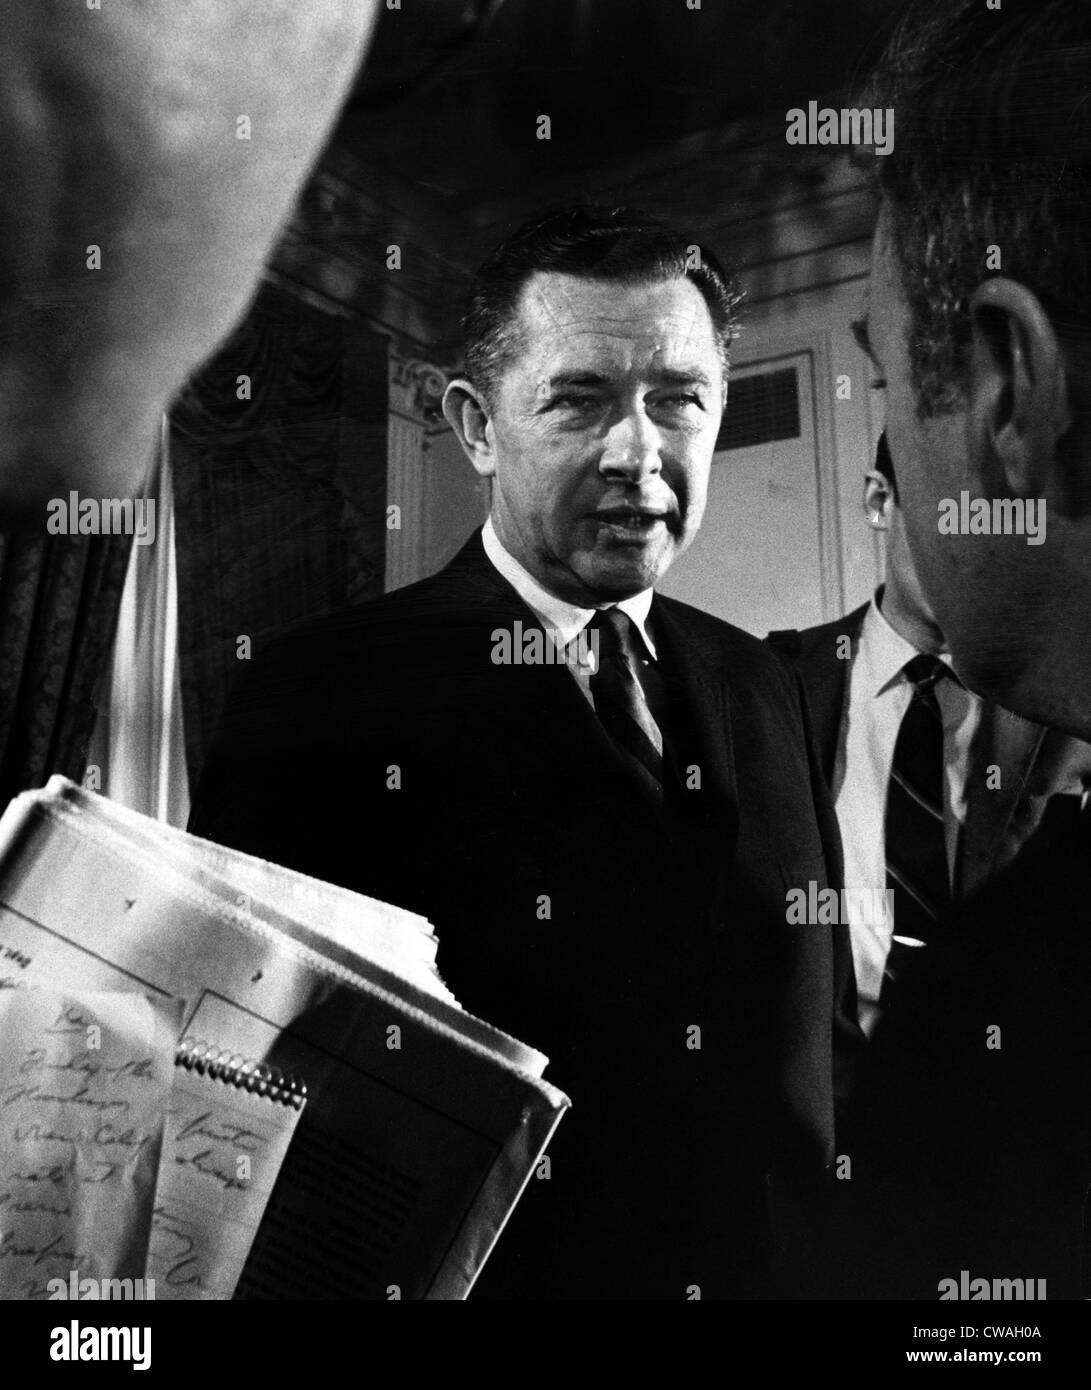 Herbert G. Klein, nombrado por el Presidente Nixon como Director de Comunicaciones, 25 de noviembre de 1968. Cortesía: CSU Archives / Foto de stock